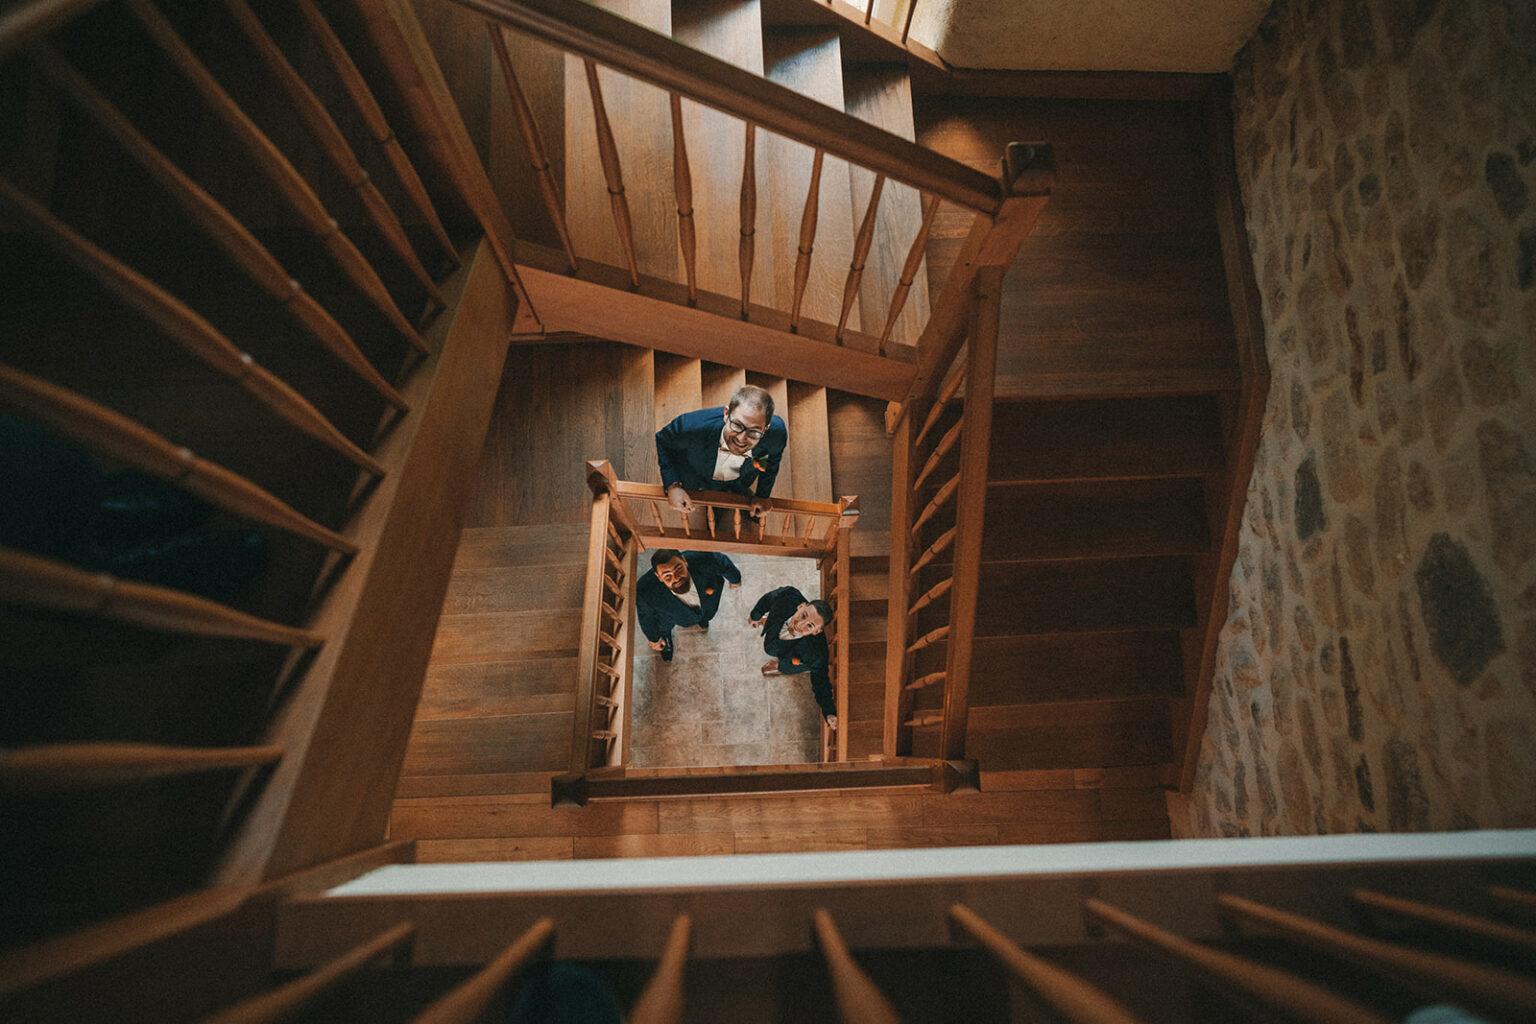 Le mariage de Barth et Christelle au château de la Lucerne d'Outremer dans la Manche par Alain Leprévost photographe vidéaste